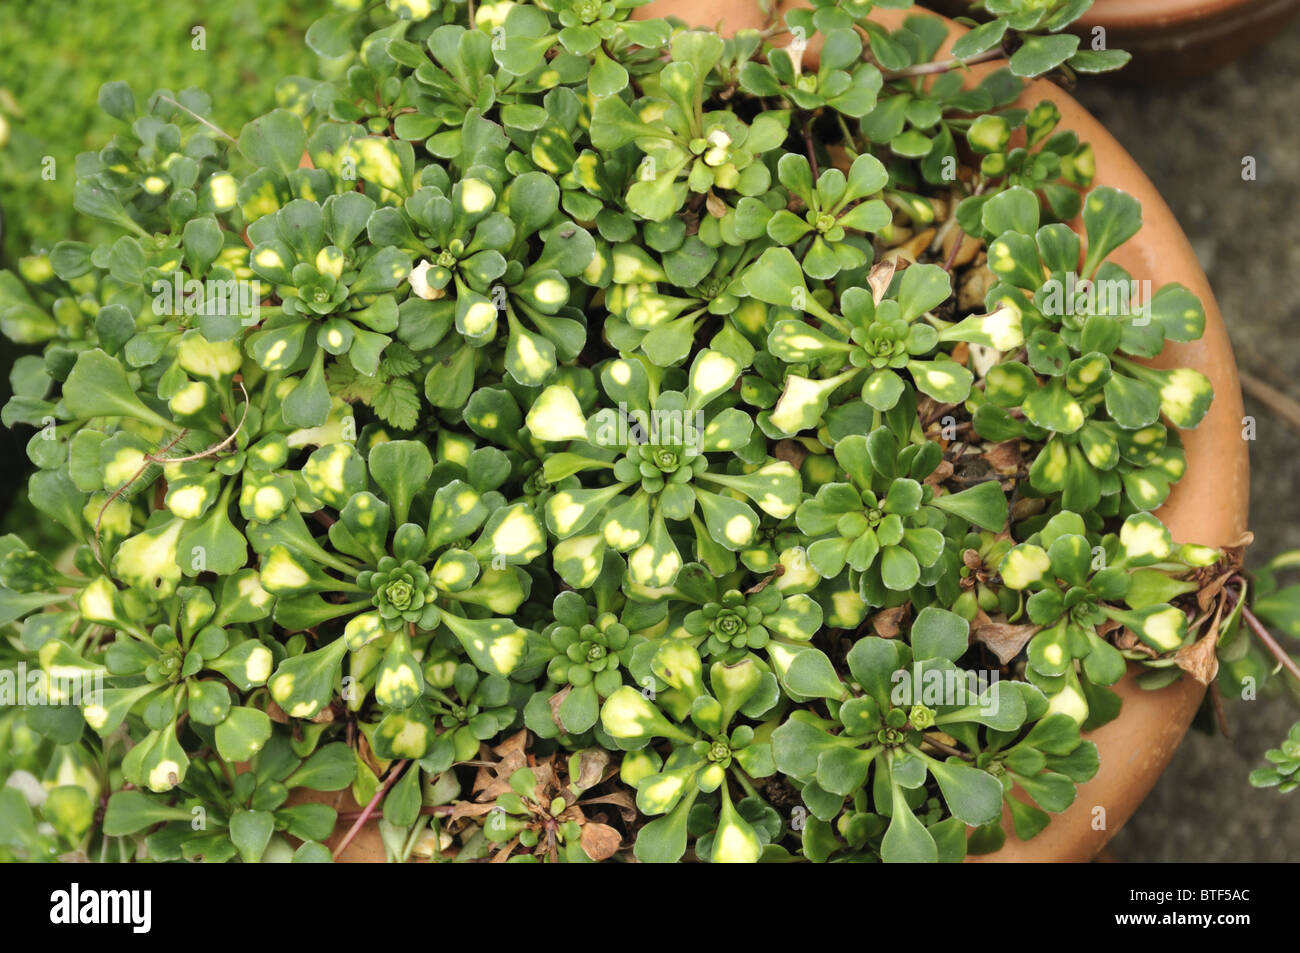 Saxifraga cuneifolia 'Variegata' Stock Photo